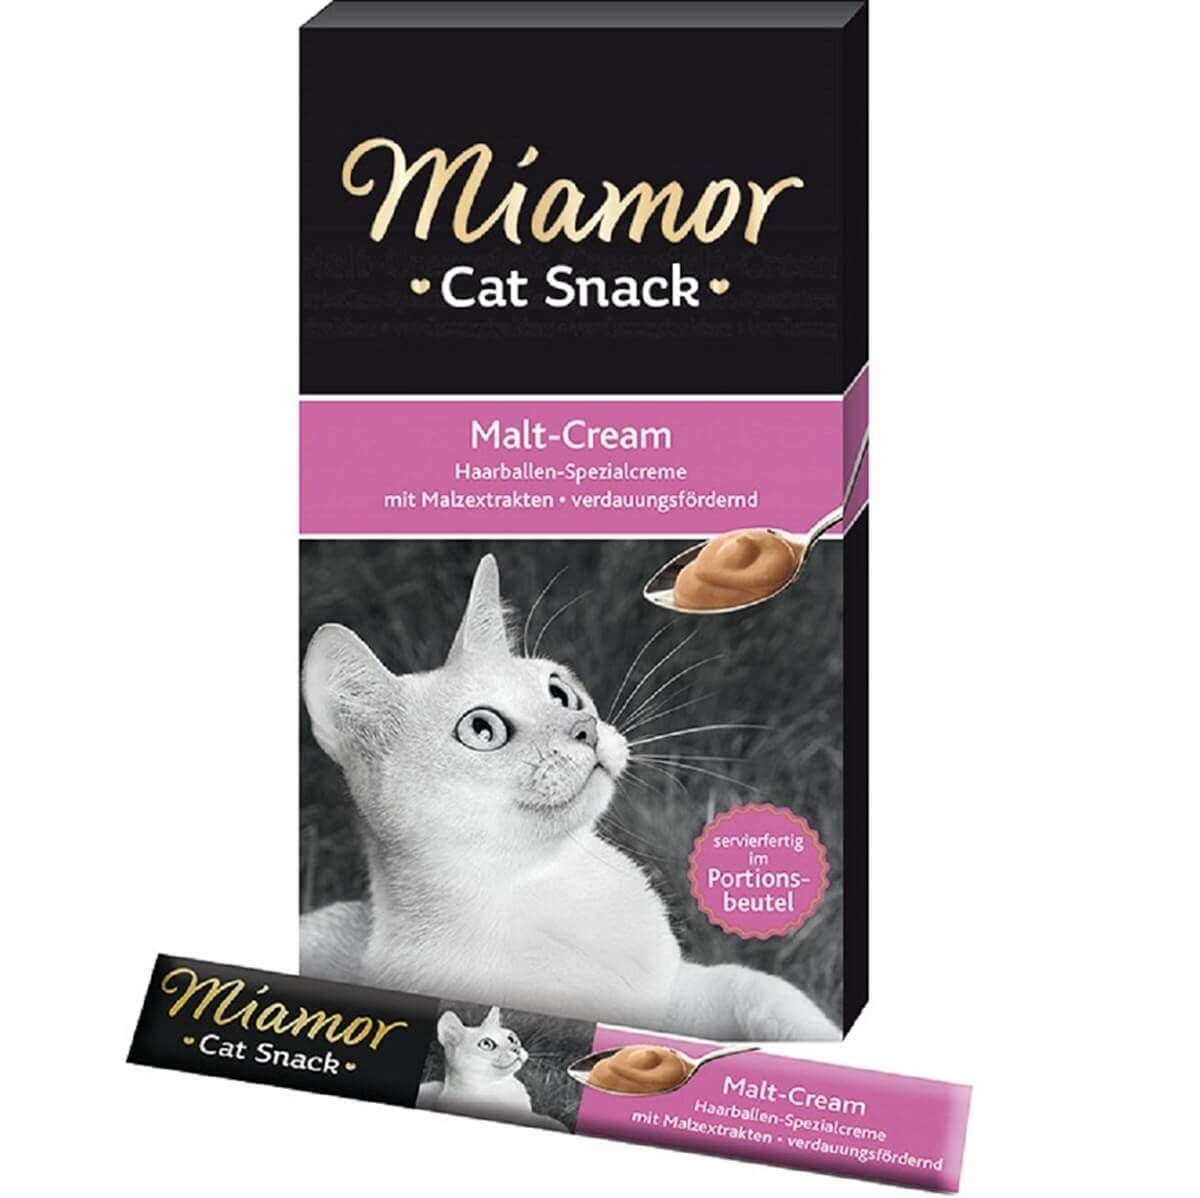 Miamor Cream Maltlı Tamalayıcı Ek Besin ve Kedi Ödülü 6 x 15 Gr